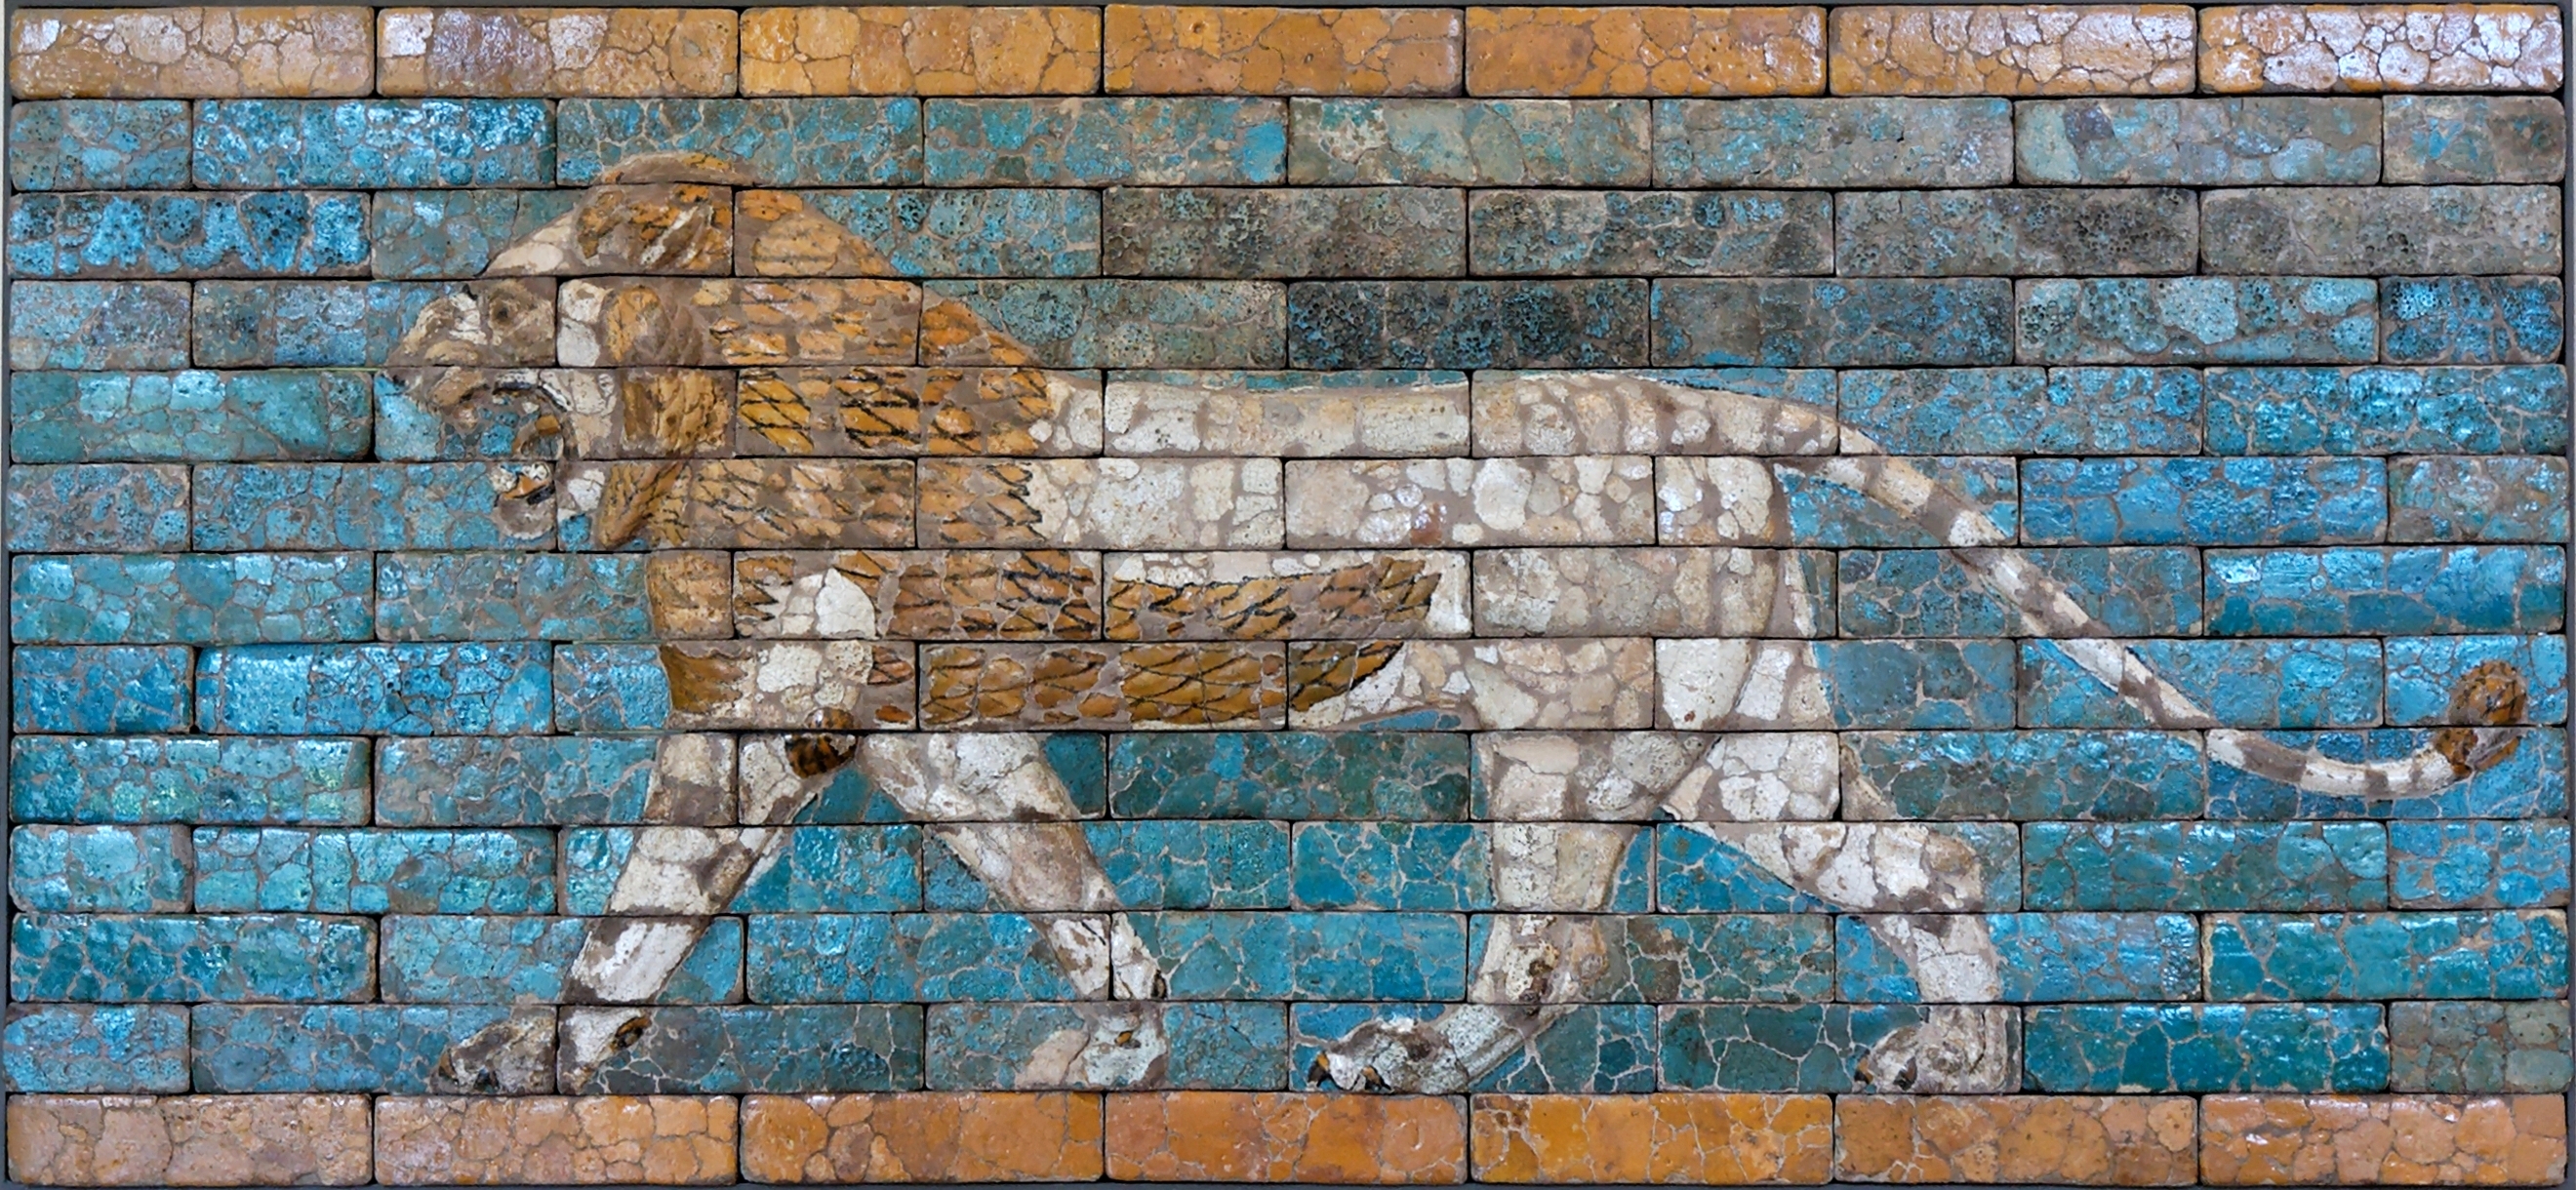 Lopende leeuw by Onbekende Artiest - 604 vChr - 562 vChr - 230 x 107 cm Kunsthistorisches Museum